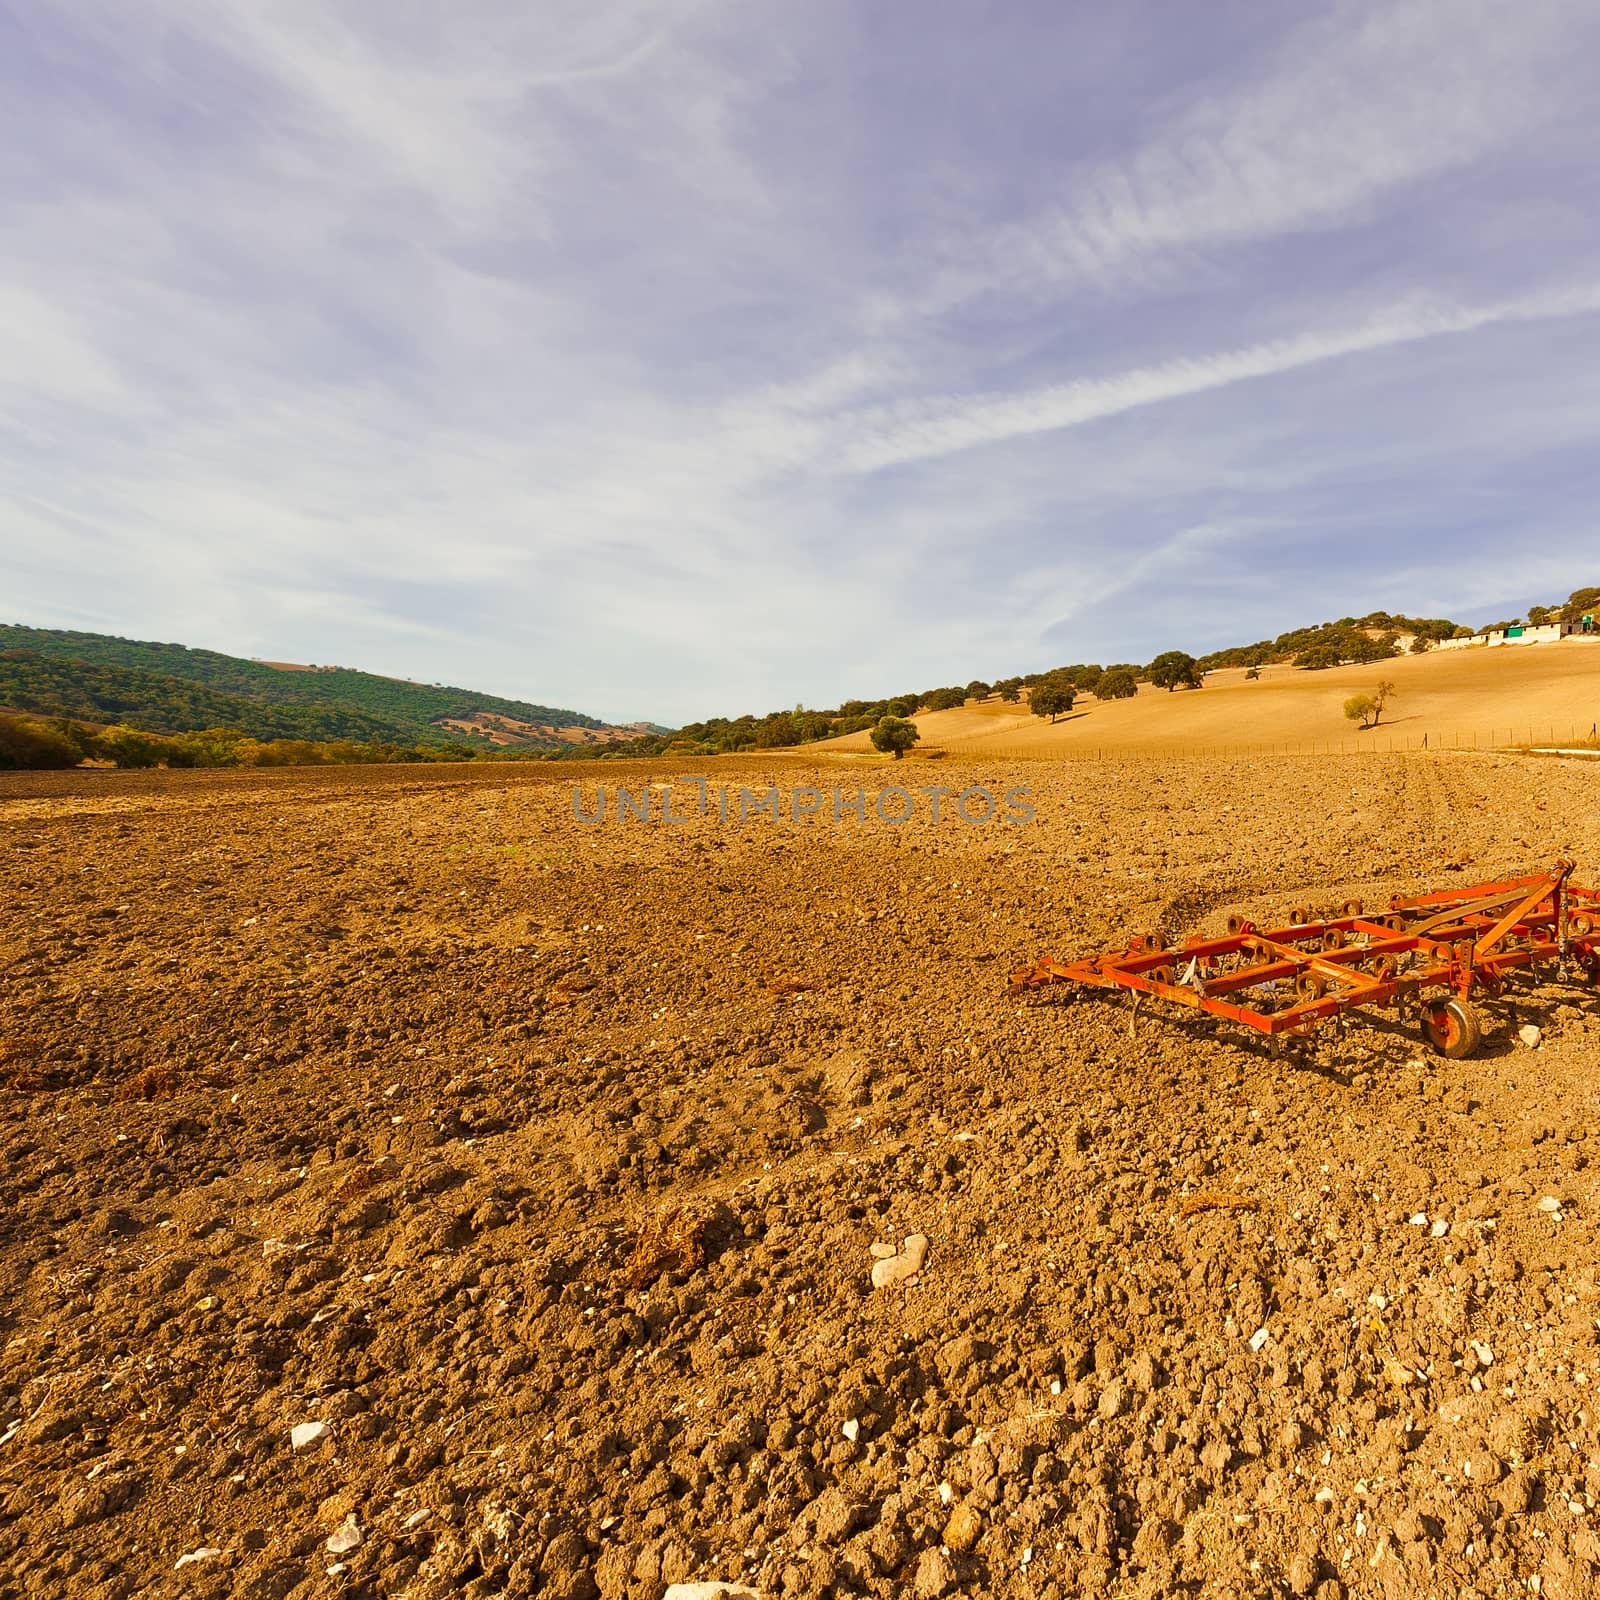 Landscape with Harrow on the Plowed Field in Spain